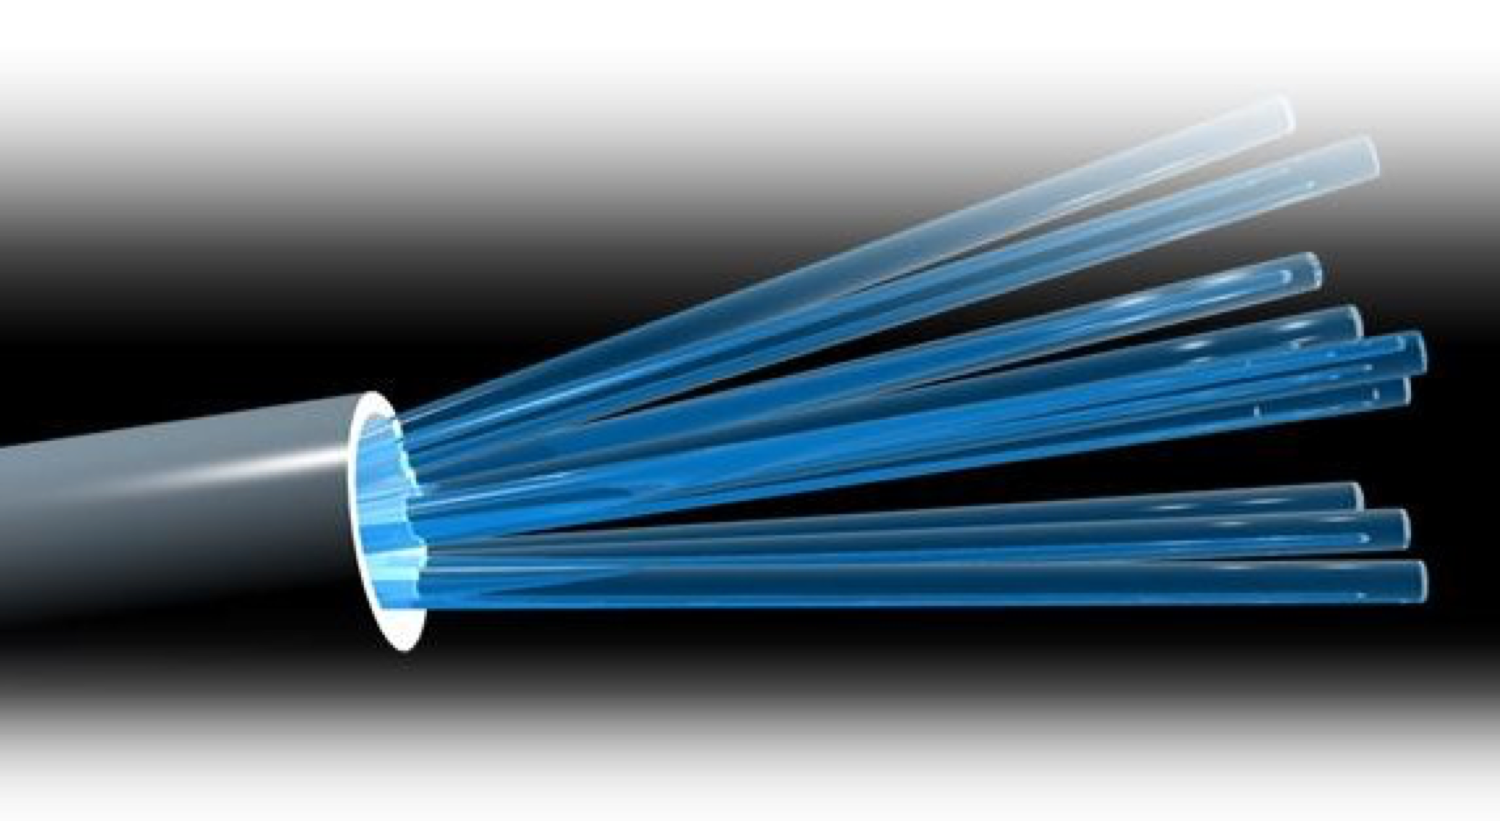 galerij Eenvoud vraag naar Glasvezel, alles wat je wilt weten over Fiber Optics - Netwerk Aanleggen